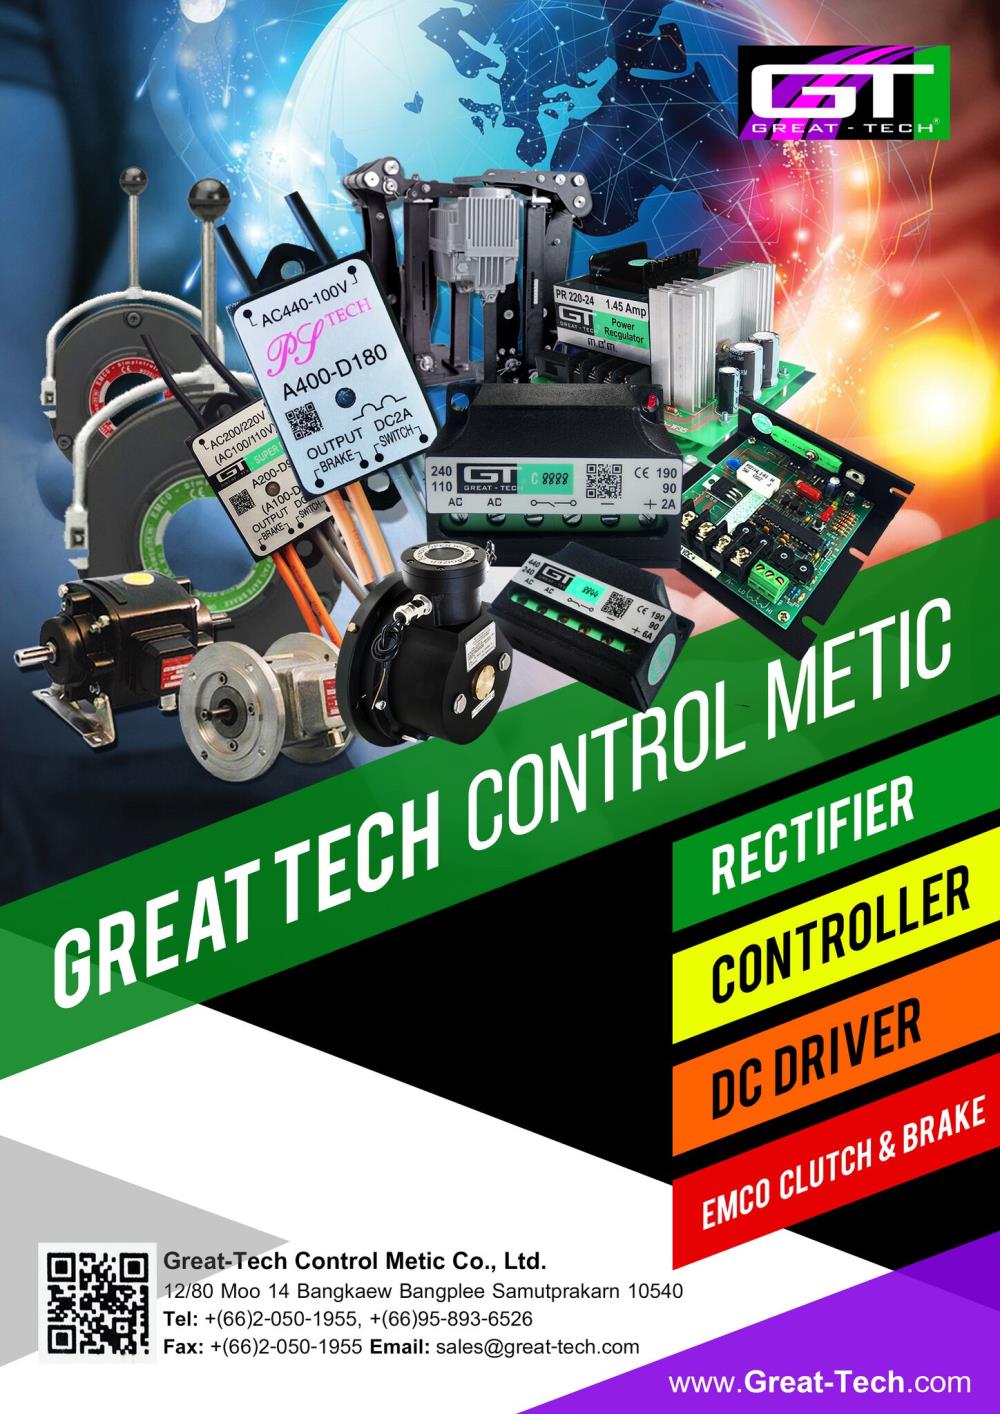 เบรคเรคติไฟเออร์,เรกติไฟเออร์ สําหรับ มอเตอร์เบรค,GT GREAT-TECH,Machinery and Process Equipment/Brakes and Clutches/Brake Components